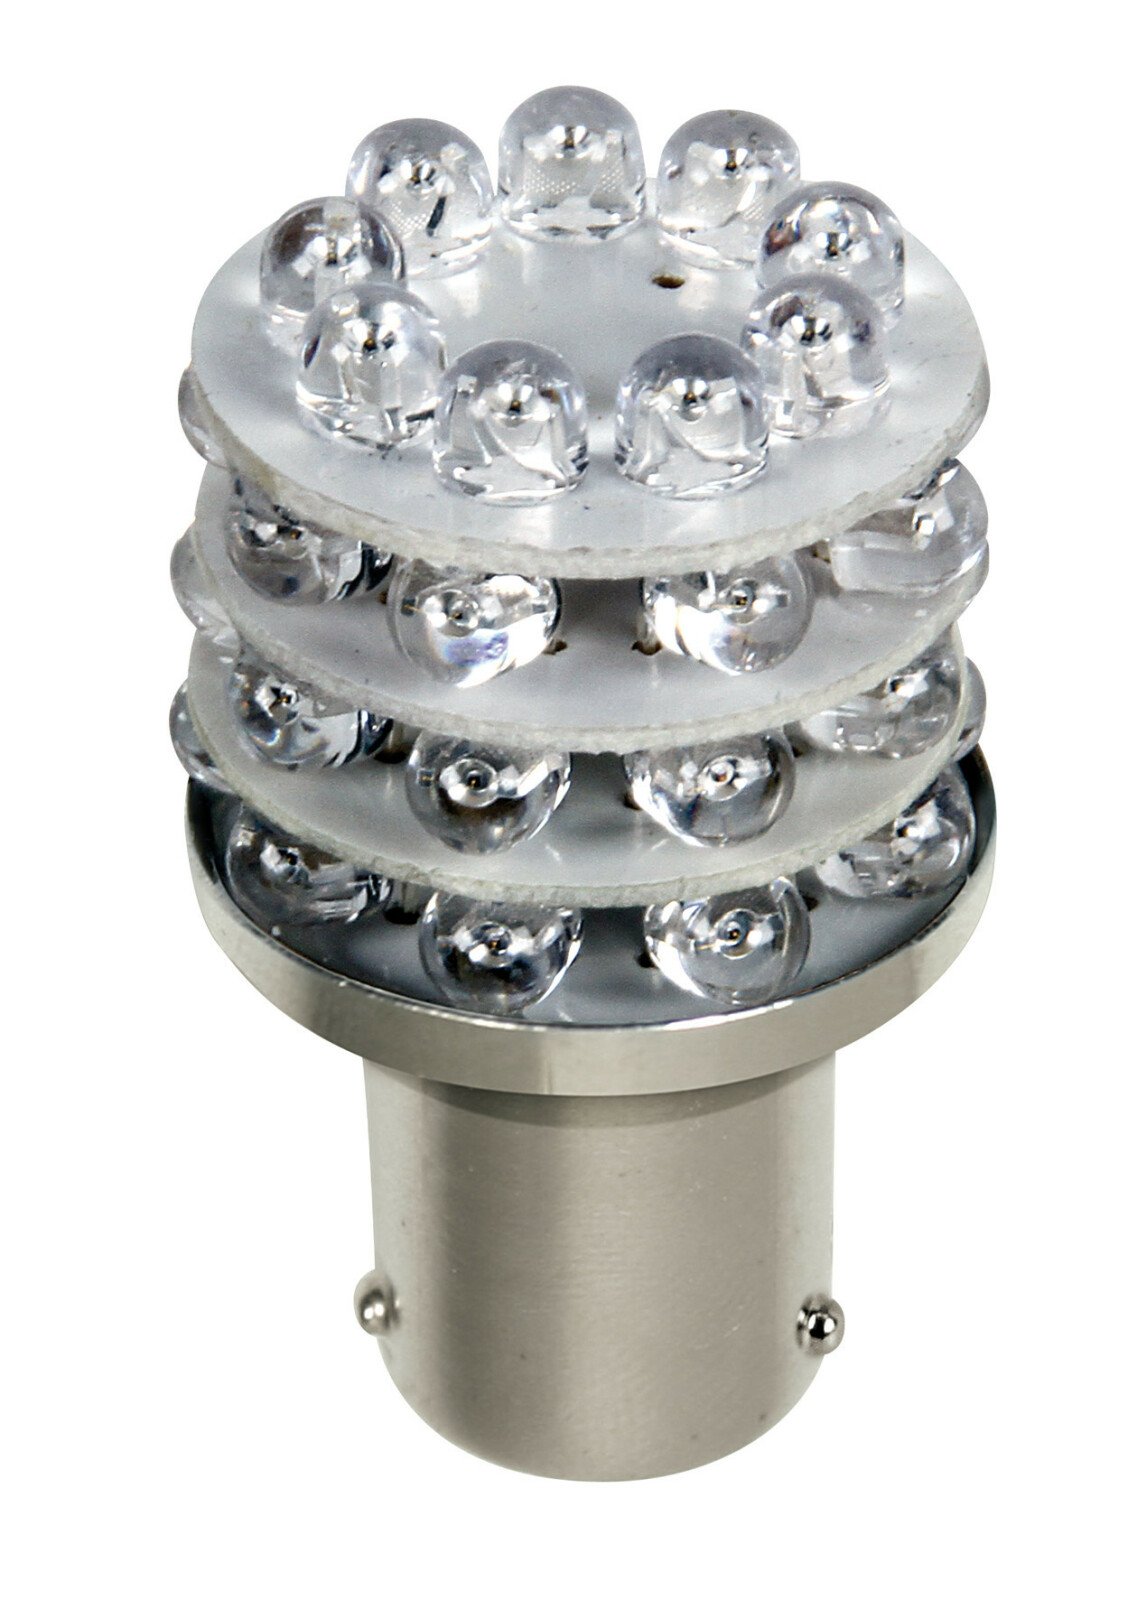 12V Multi-Led Lamp 36 Led - (PY21W) - Amber thumb